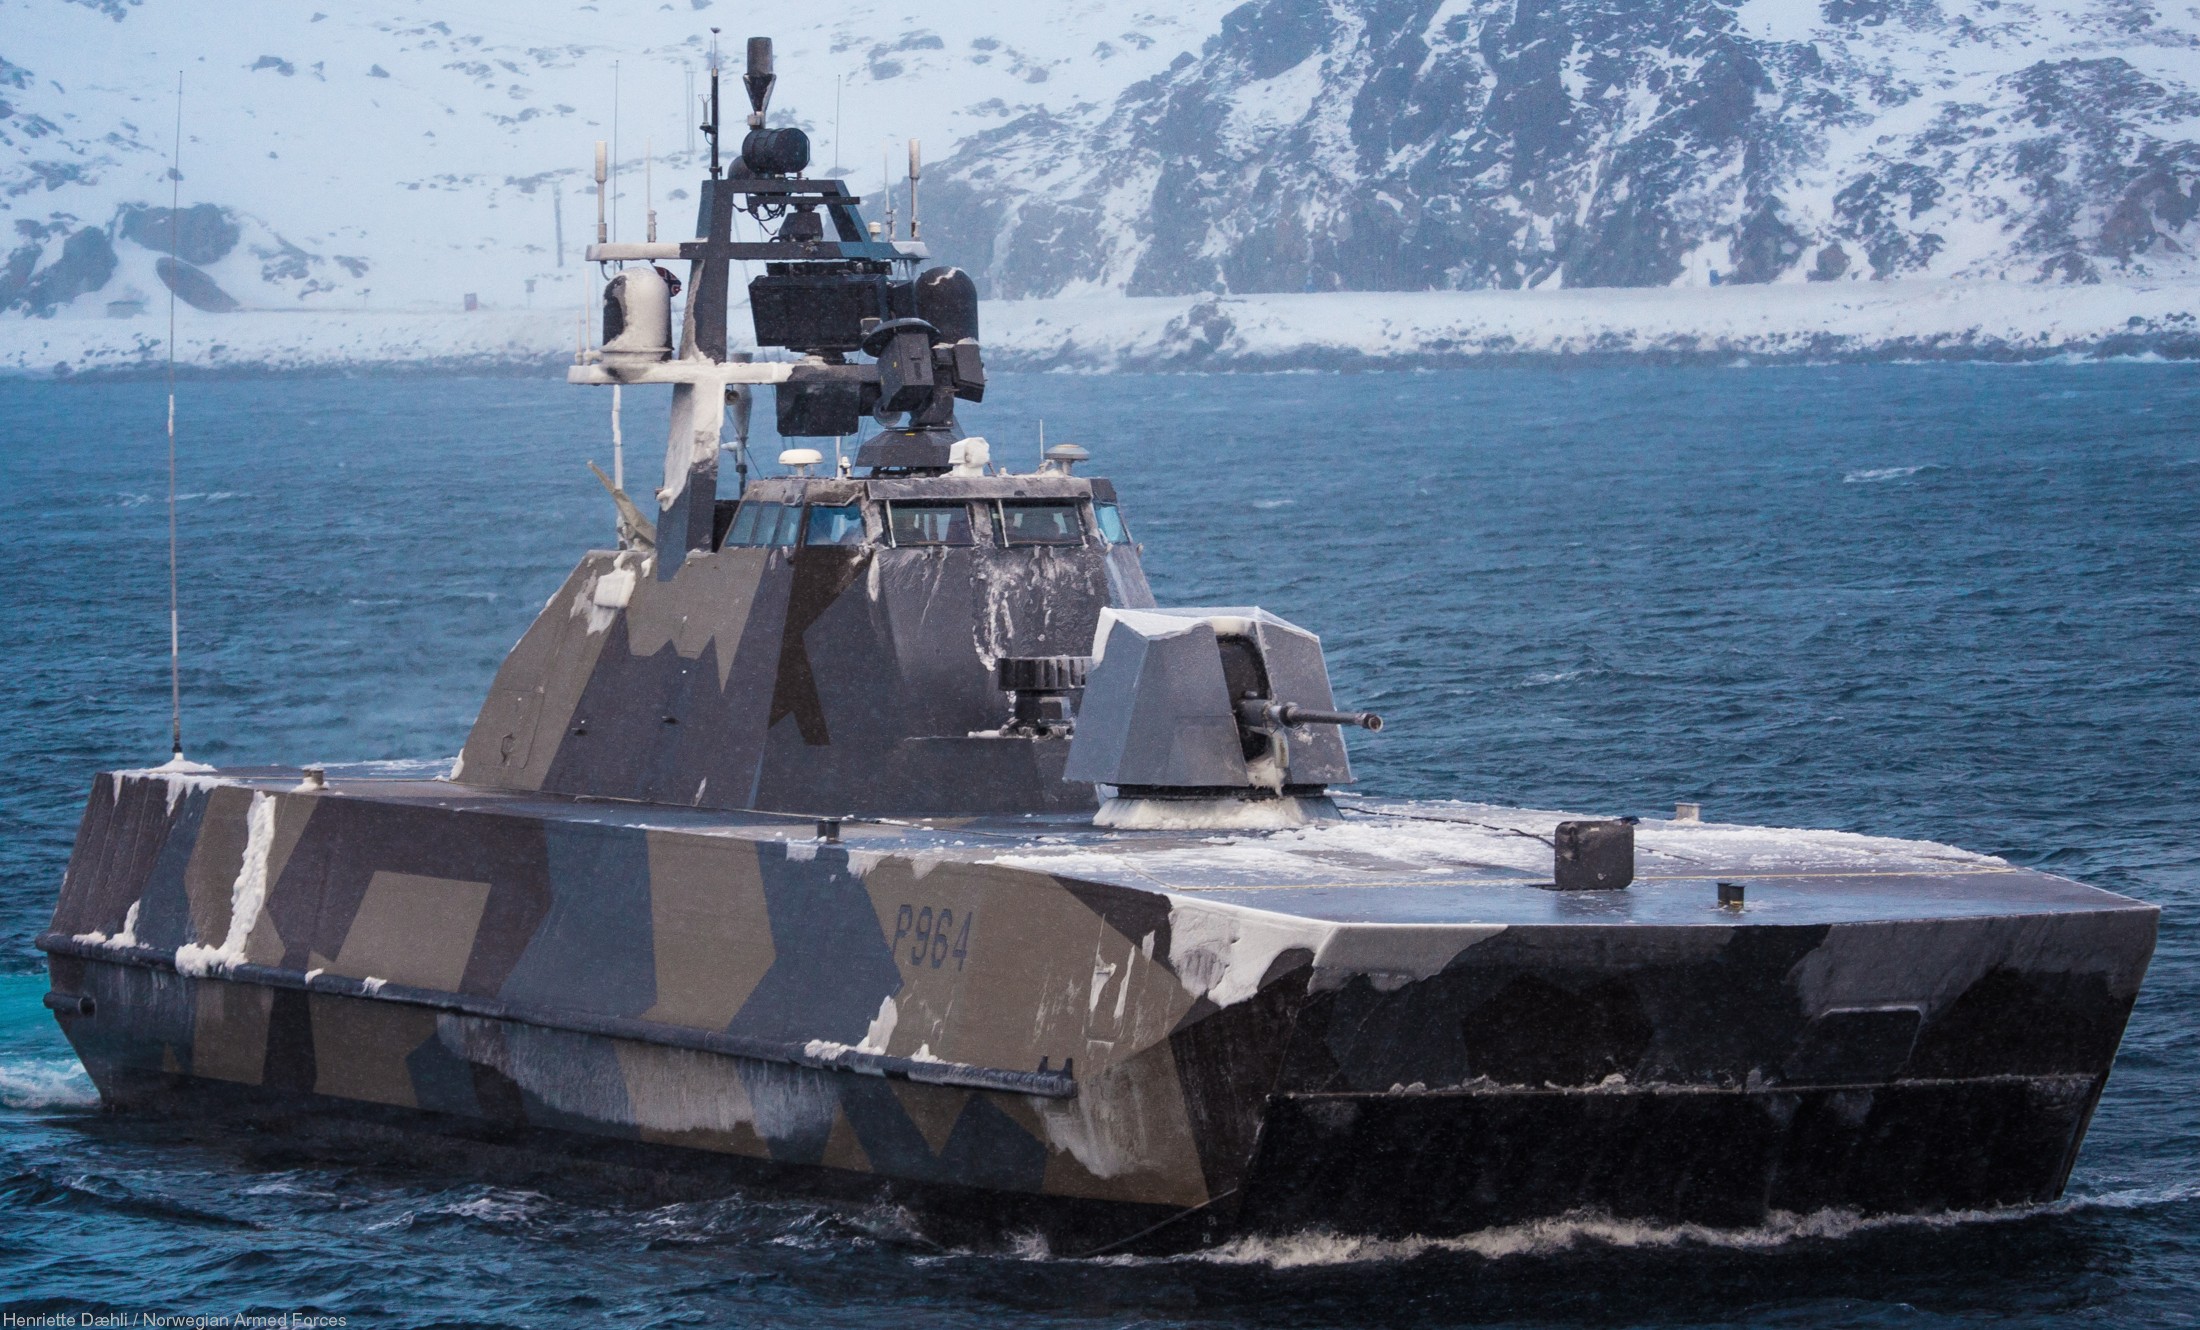 p-964 glimt knm hnoms skjold class corvette royal norwegian navy sjoforsvaret 05